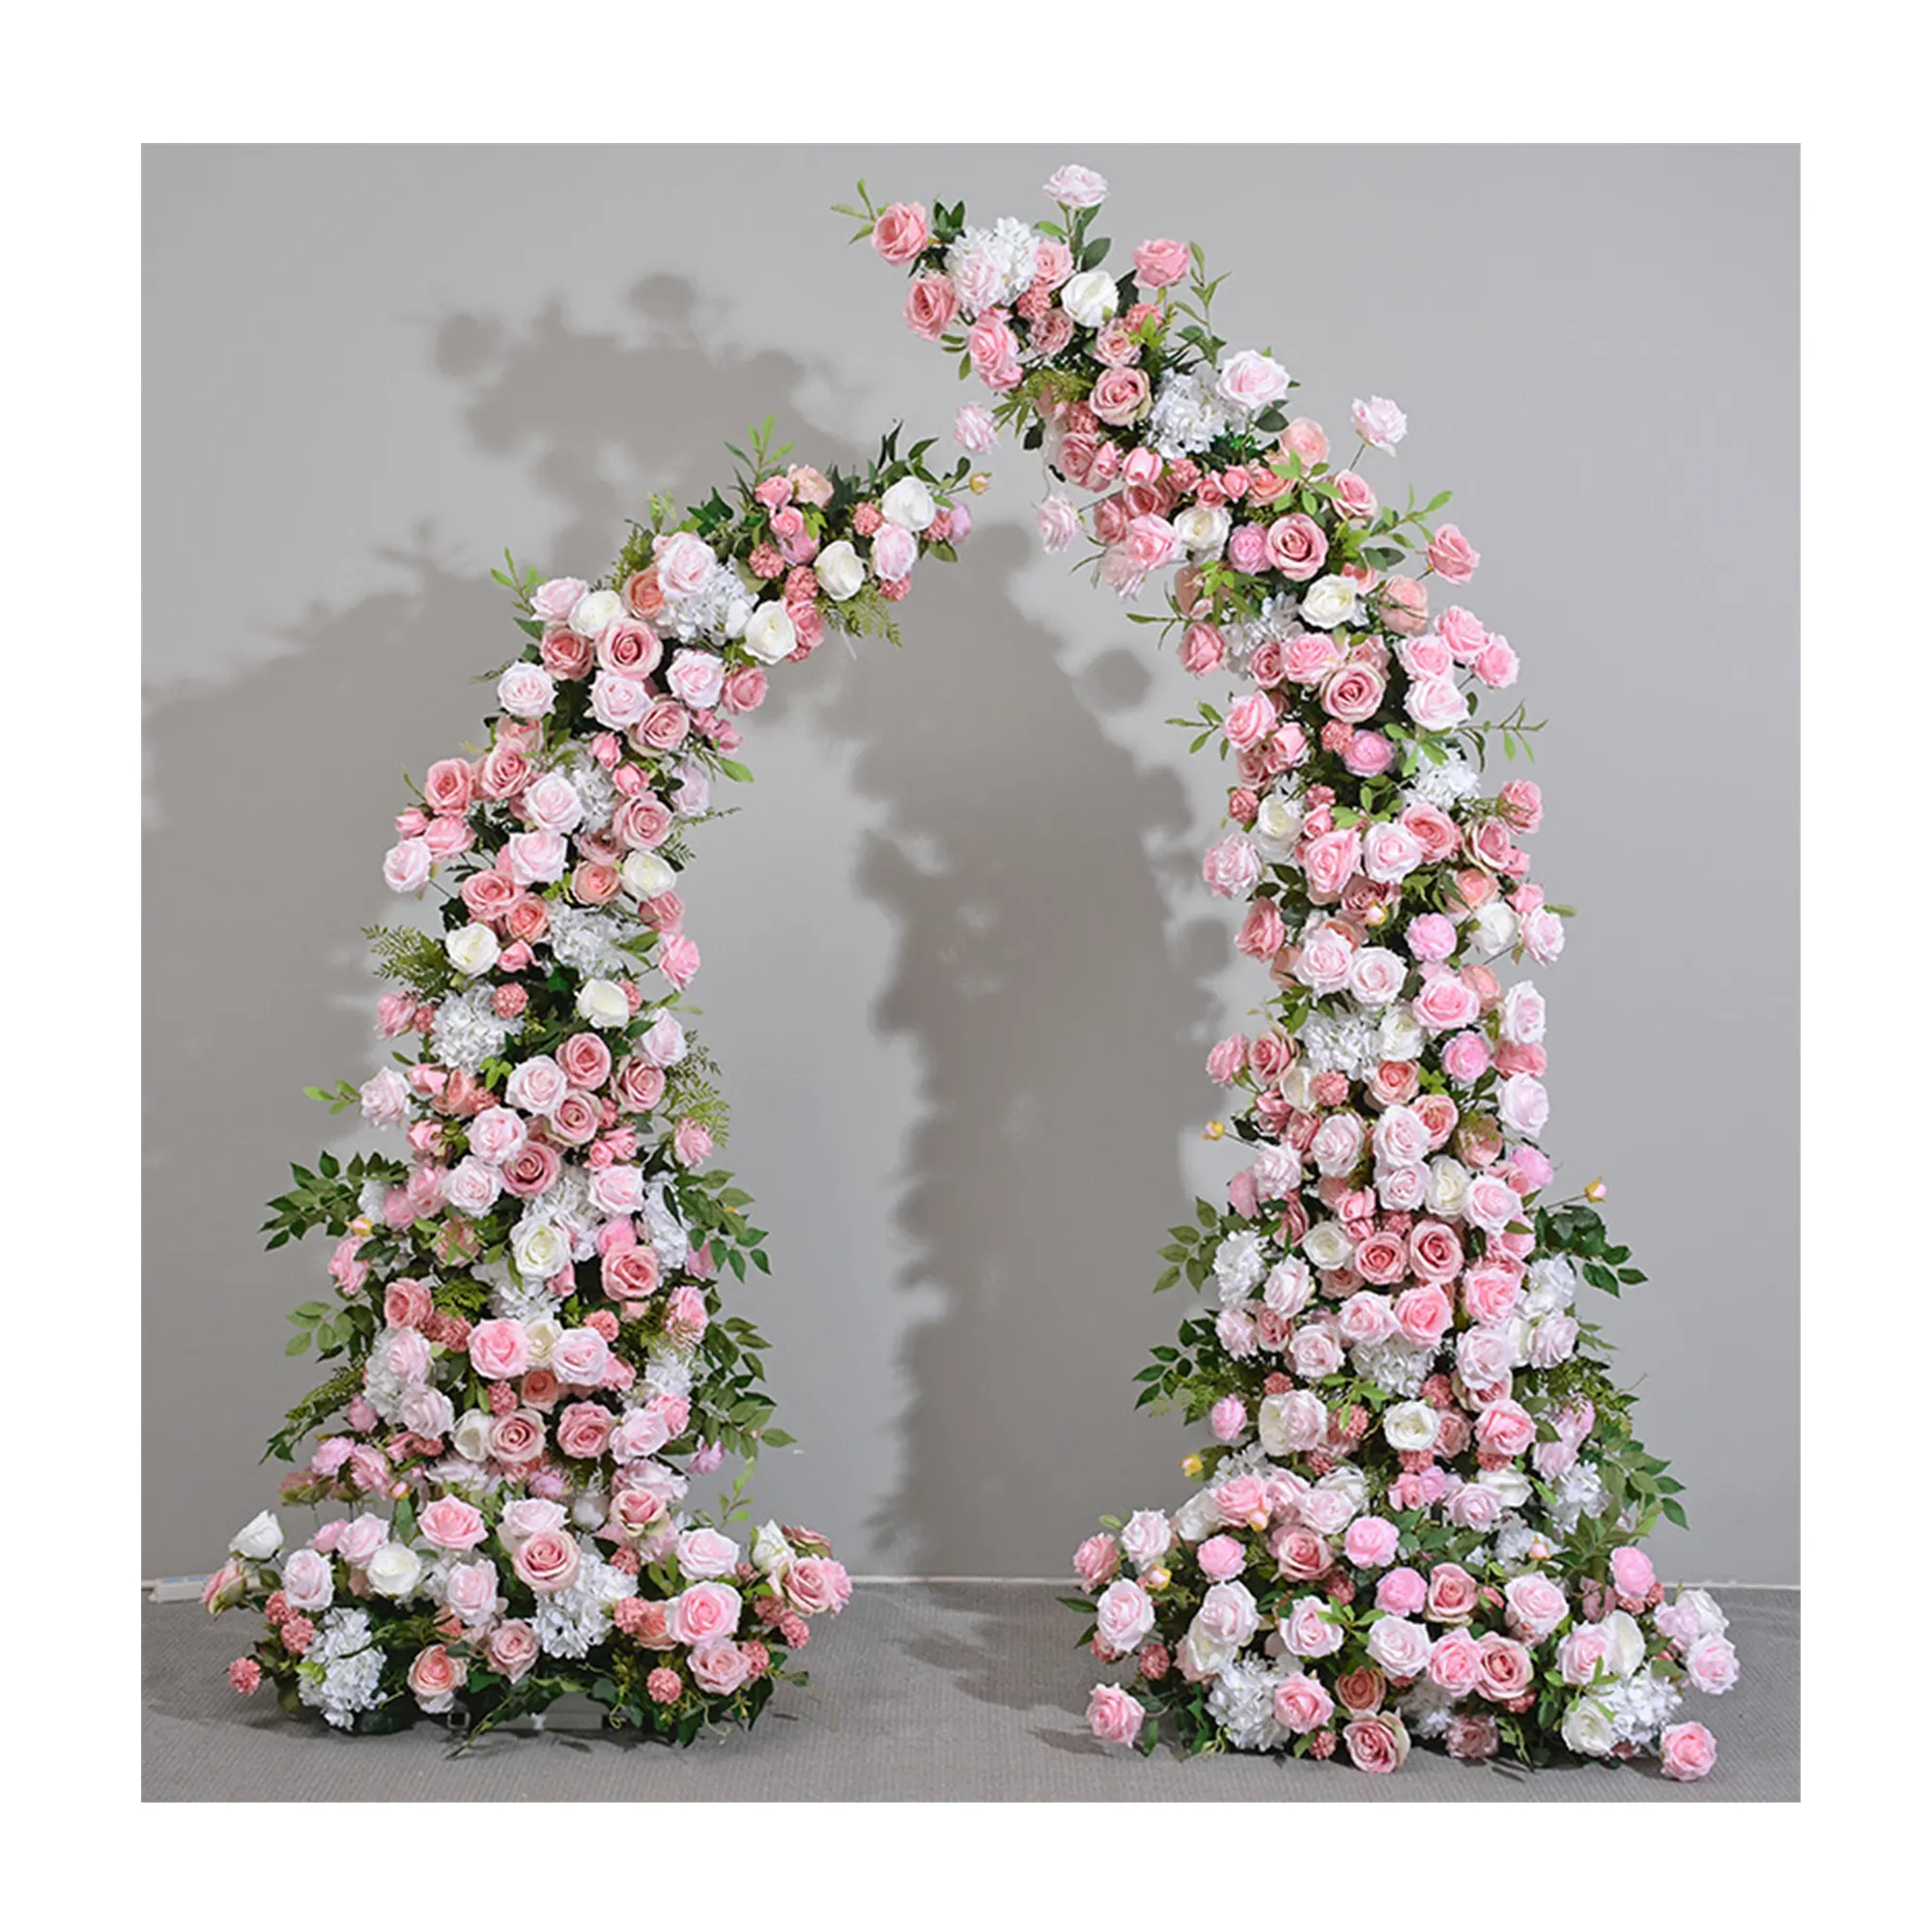 قوس زائف للزهور أبيض ووردي صناعي، شكل ورقة الفاوانيا، قرن الهيدرانجيا، مناسب لزينة حفلات الزفاف